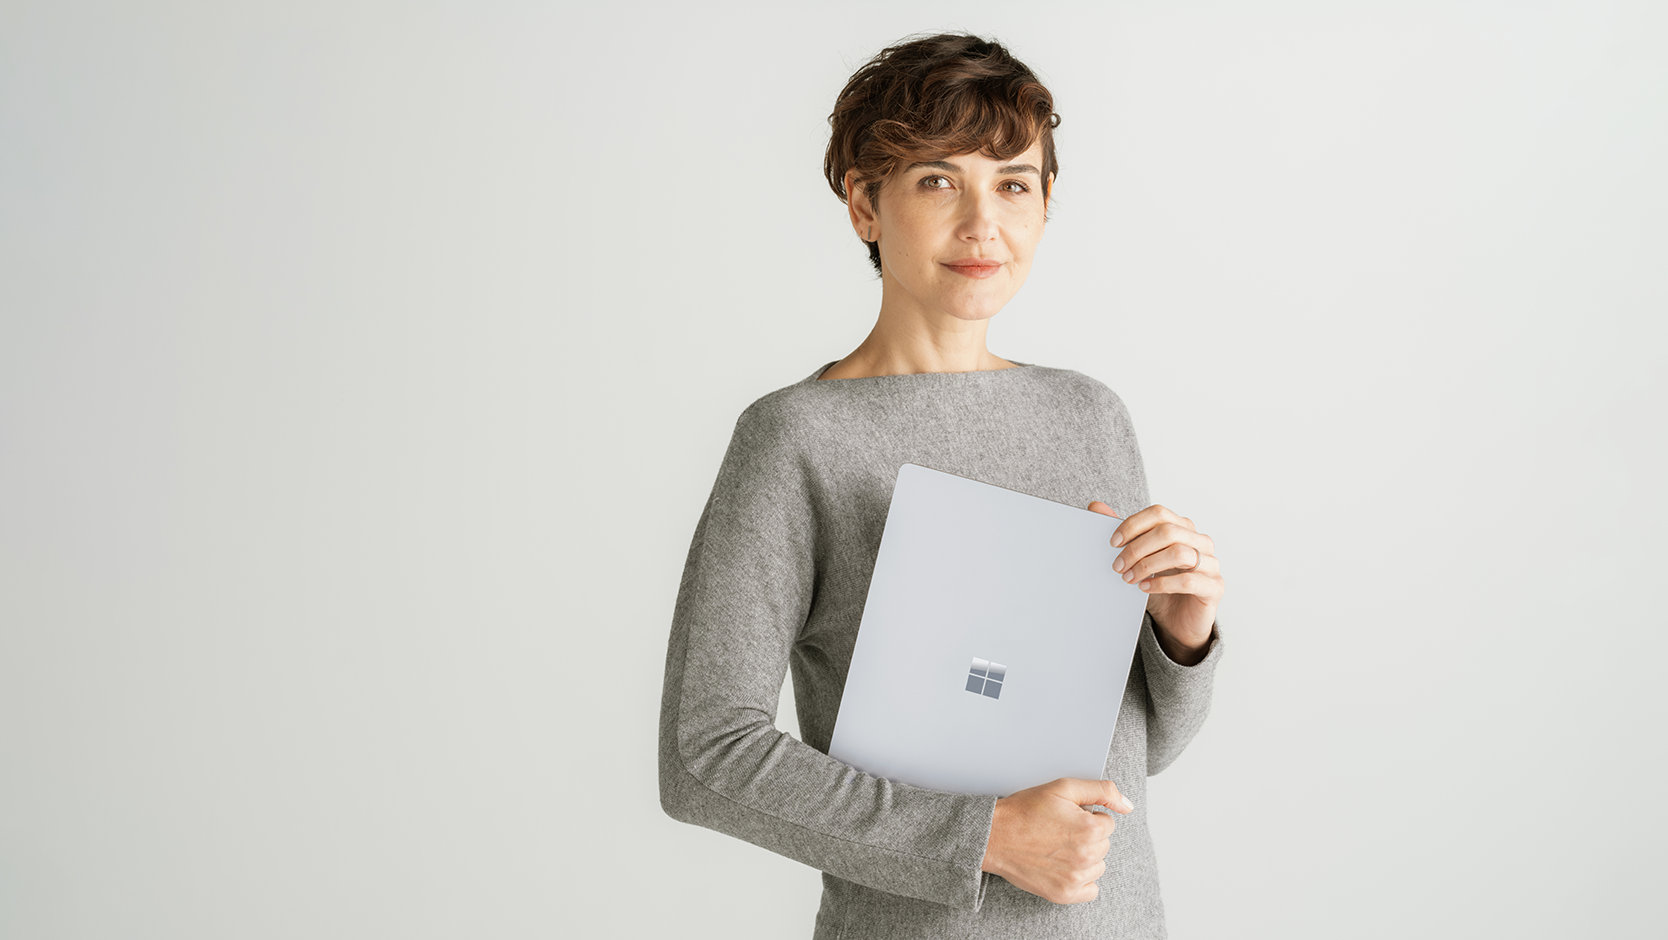 法人向け Surface Laptop 6 を持ち運んで、ハードウェアとソフトウェアの保護の信頼性をアピールする人物。